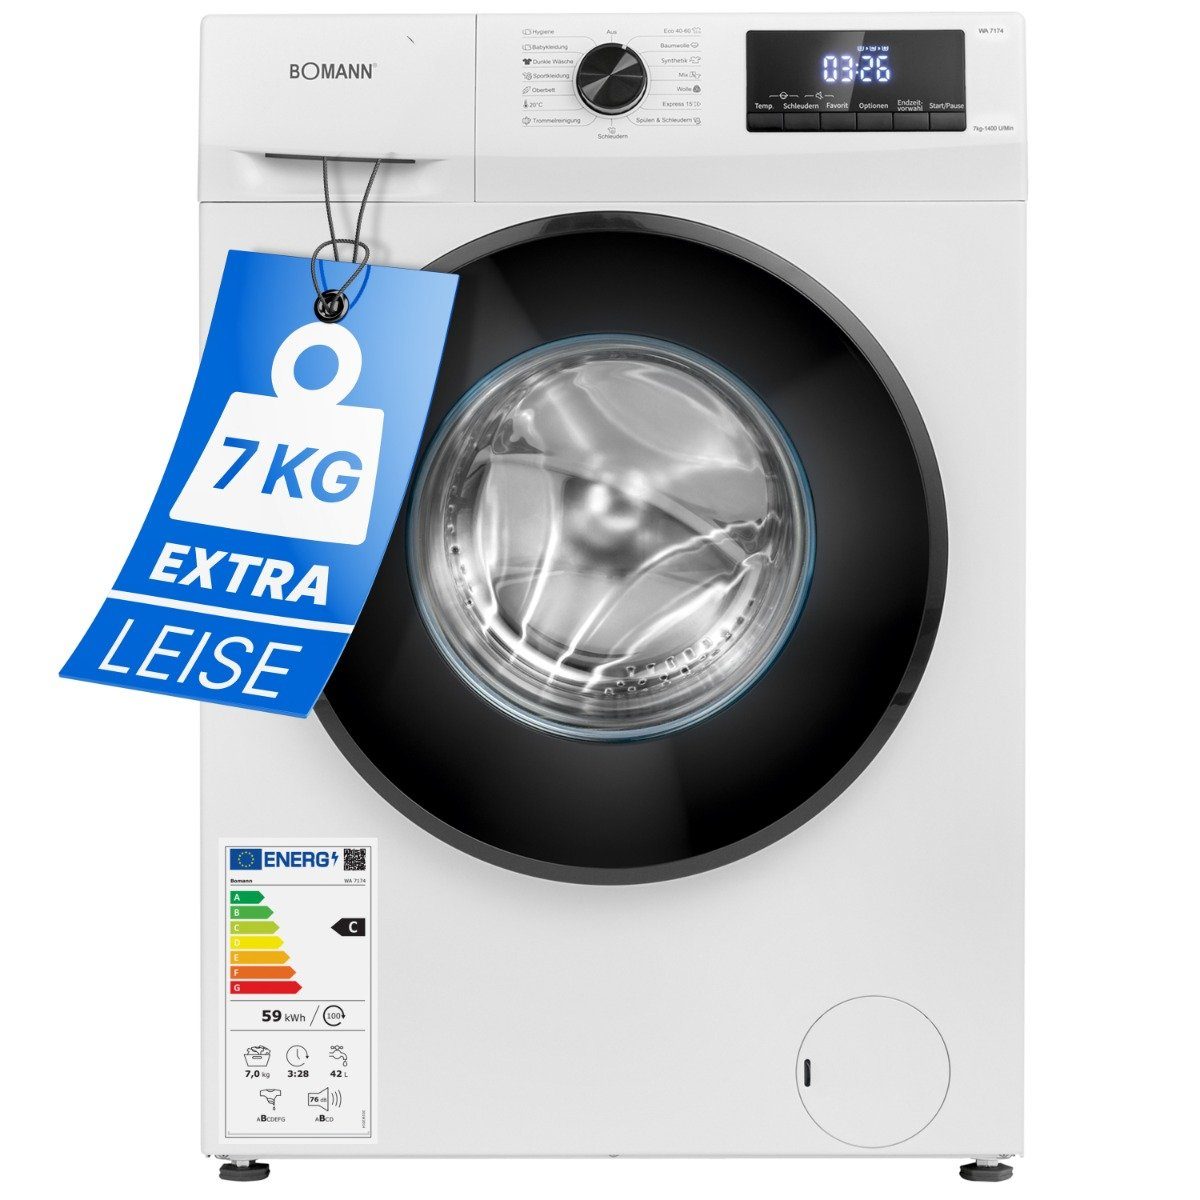 BOMANN Waschmaschine WA 7174, Waschmaschine 7kg mit max. 1400 U/min und Endzweitvorwahl